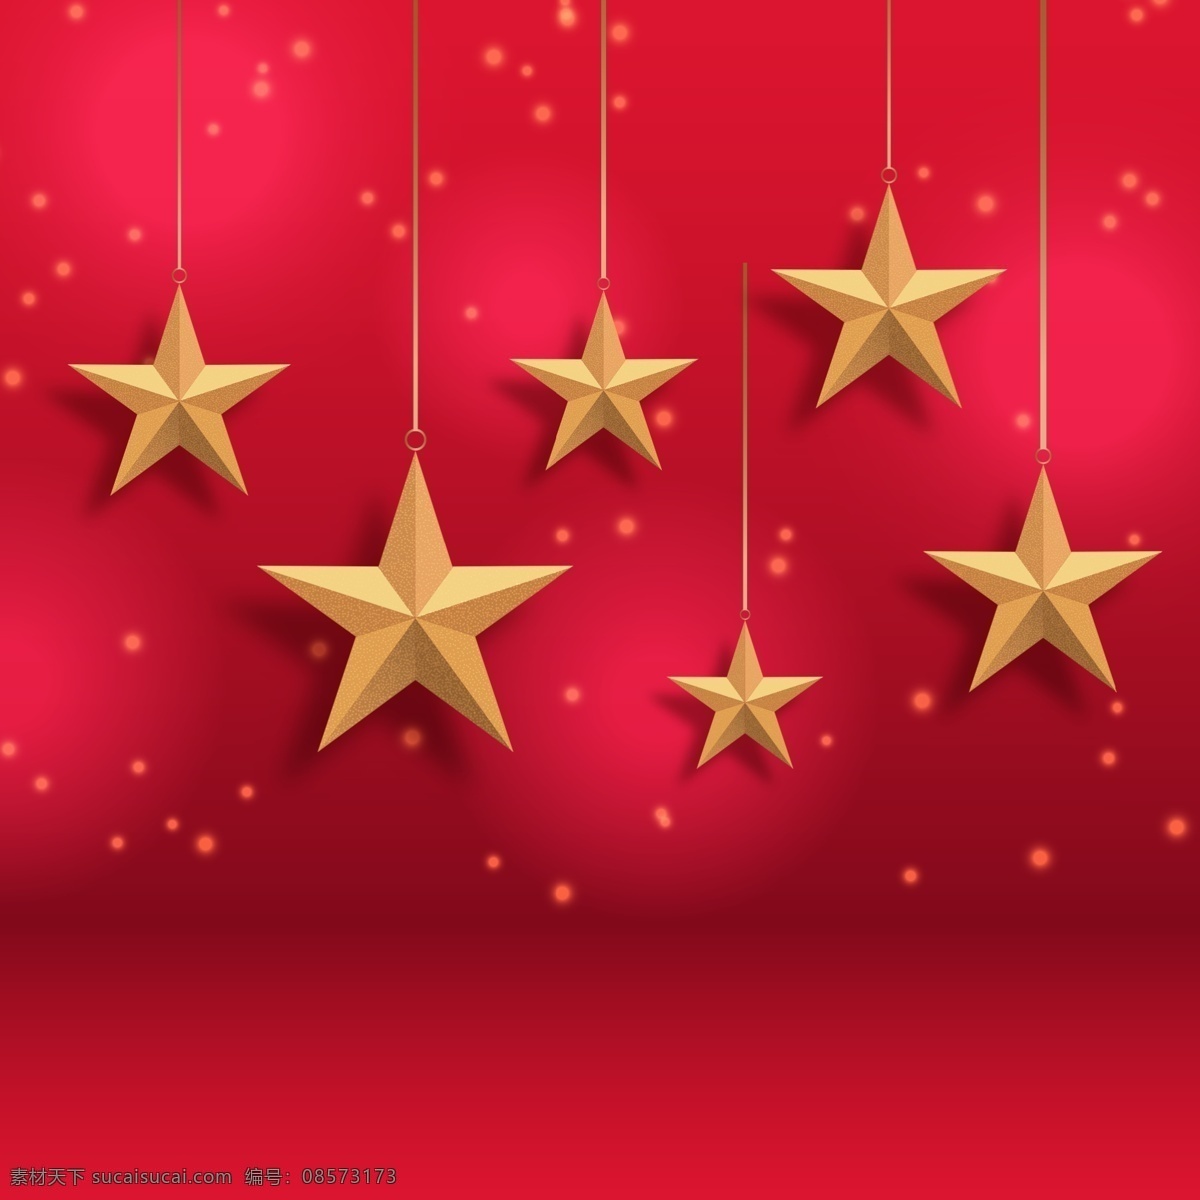 节日 星星 背景图片 节日星星背景 星星背景 金色 五角星 红色 喜庆 圣诞节